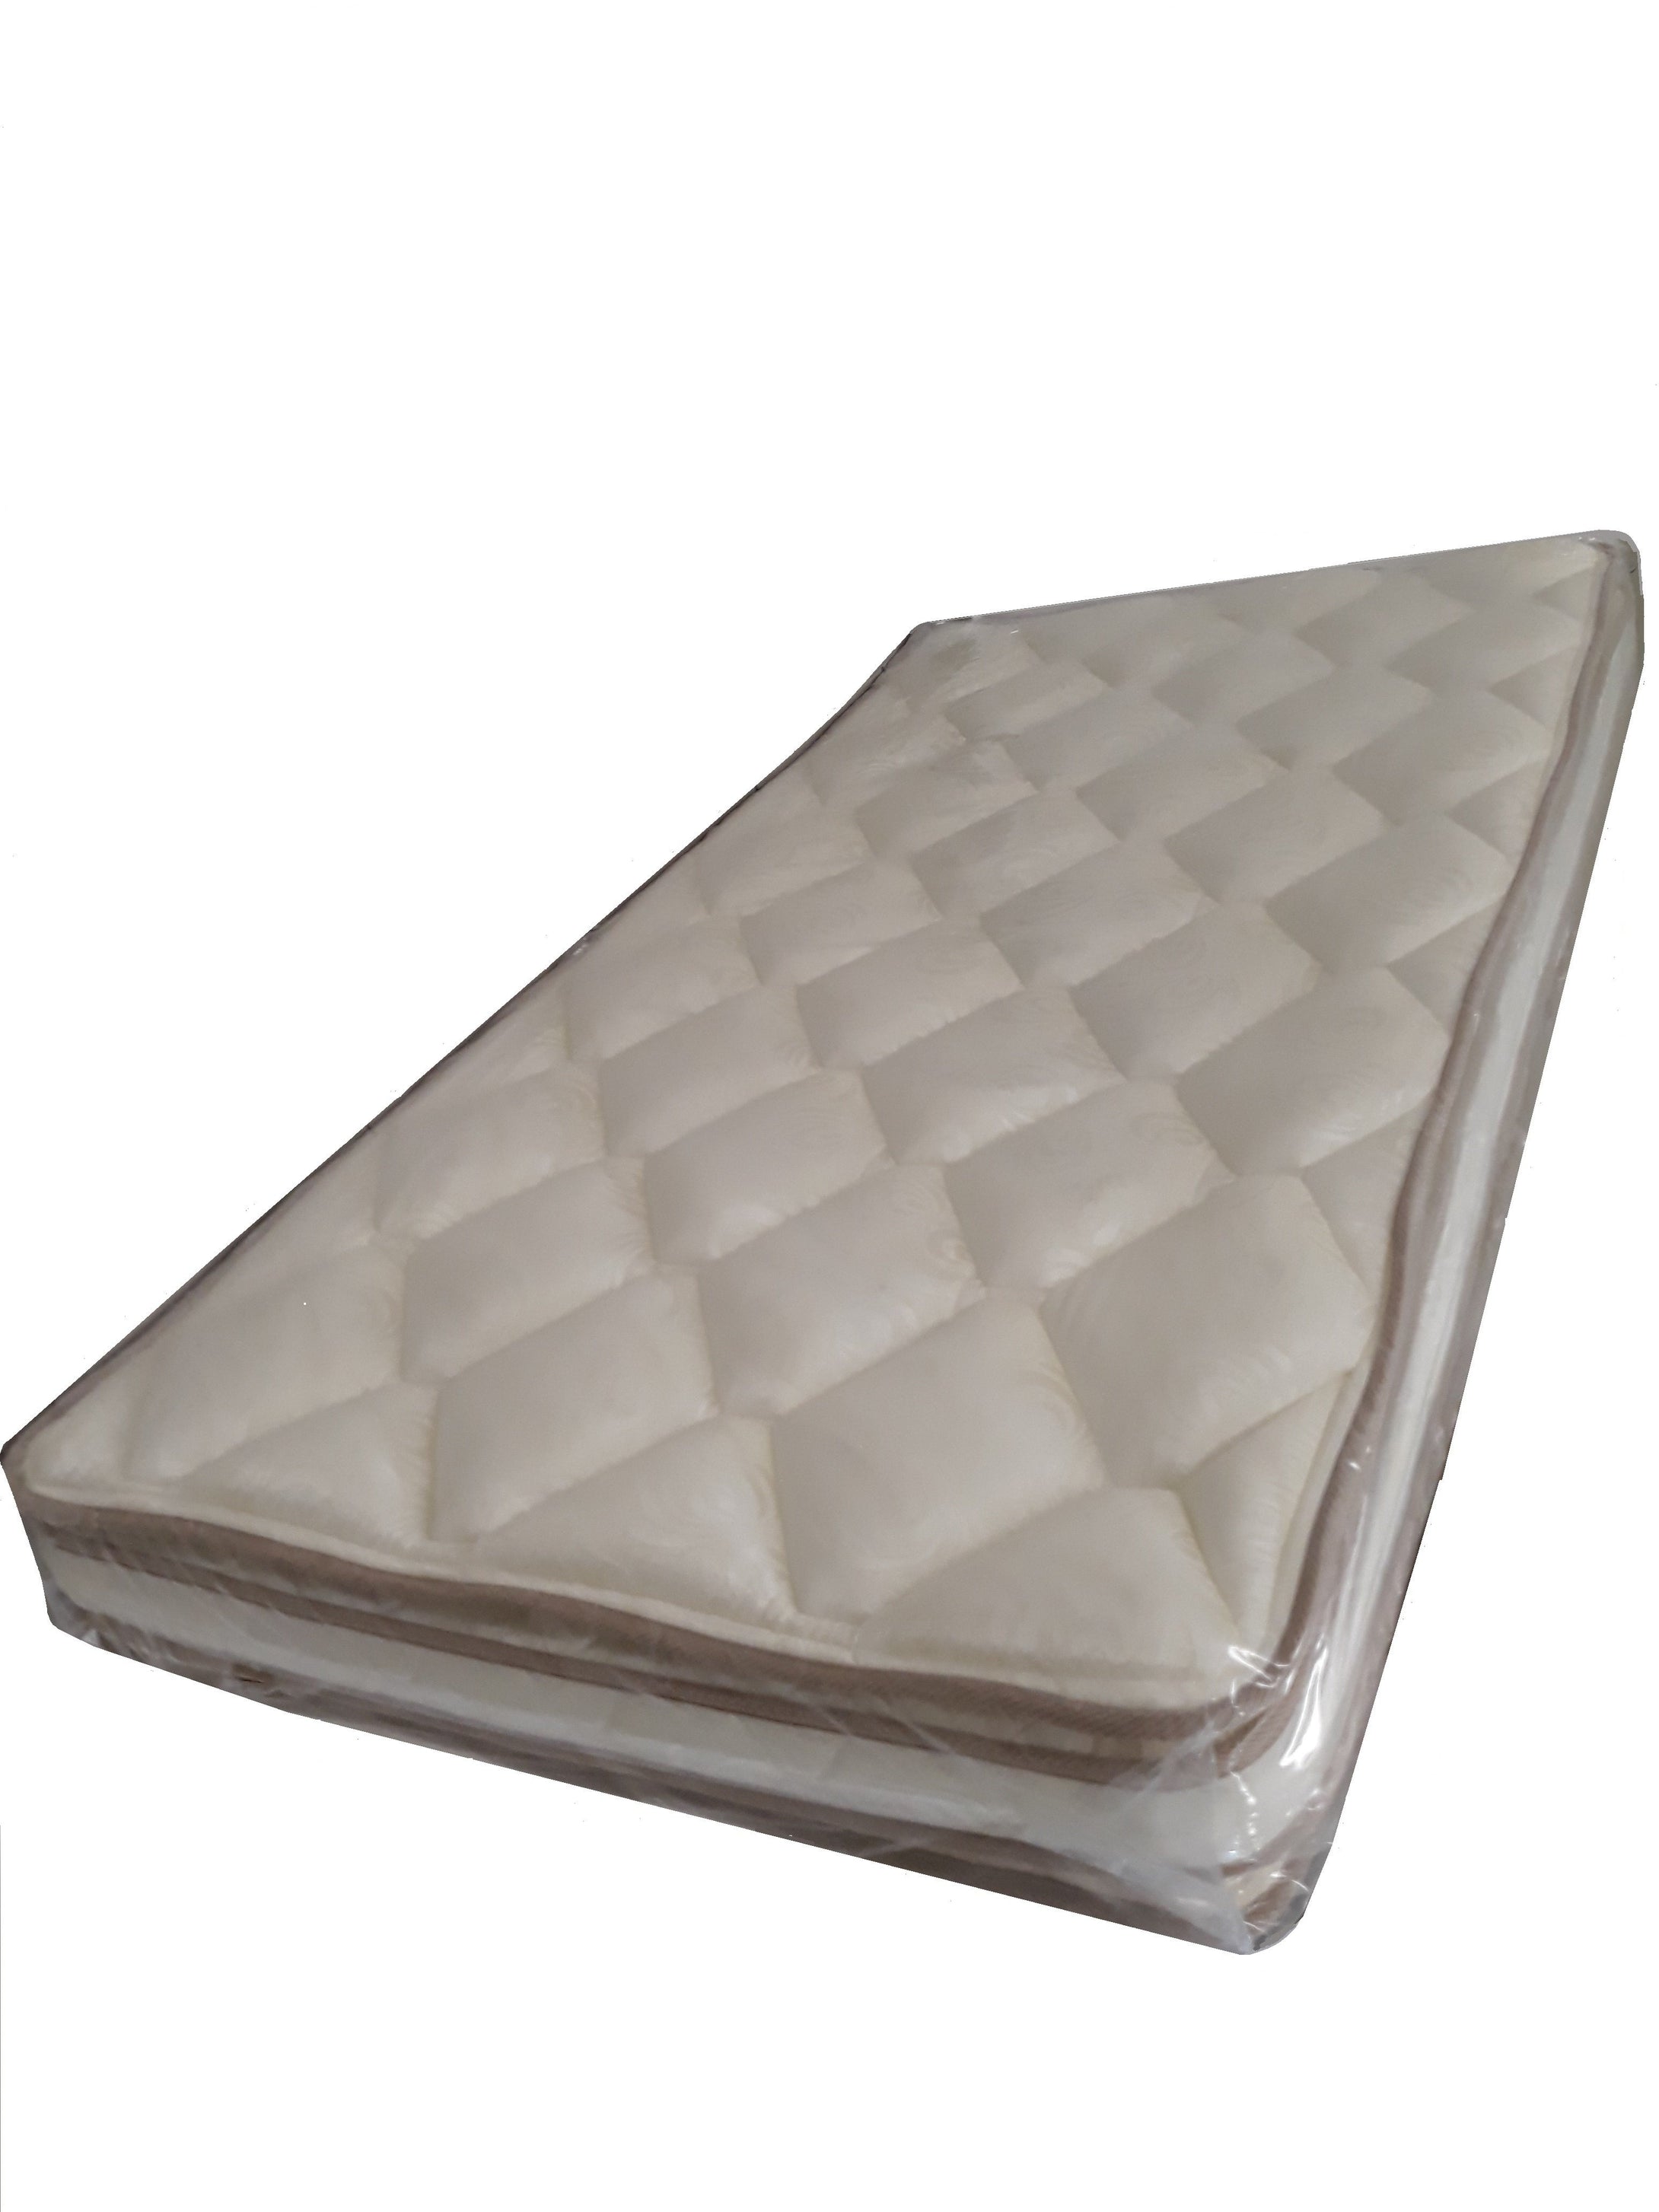 Colchon foam Dr Dream 90x190cms pillow top